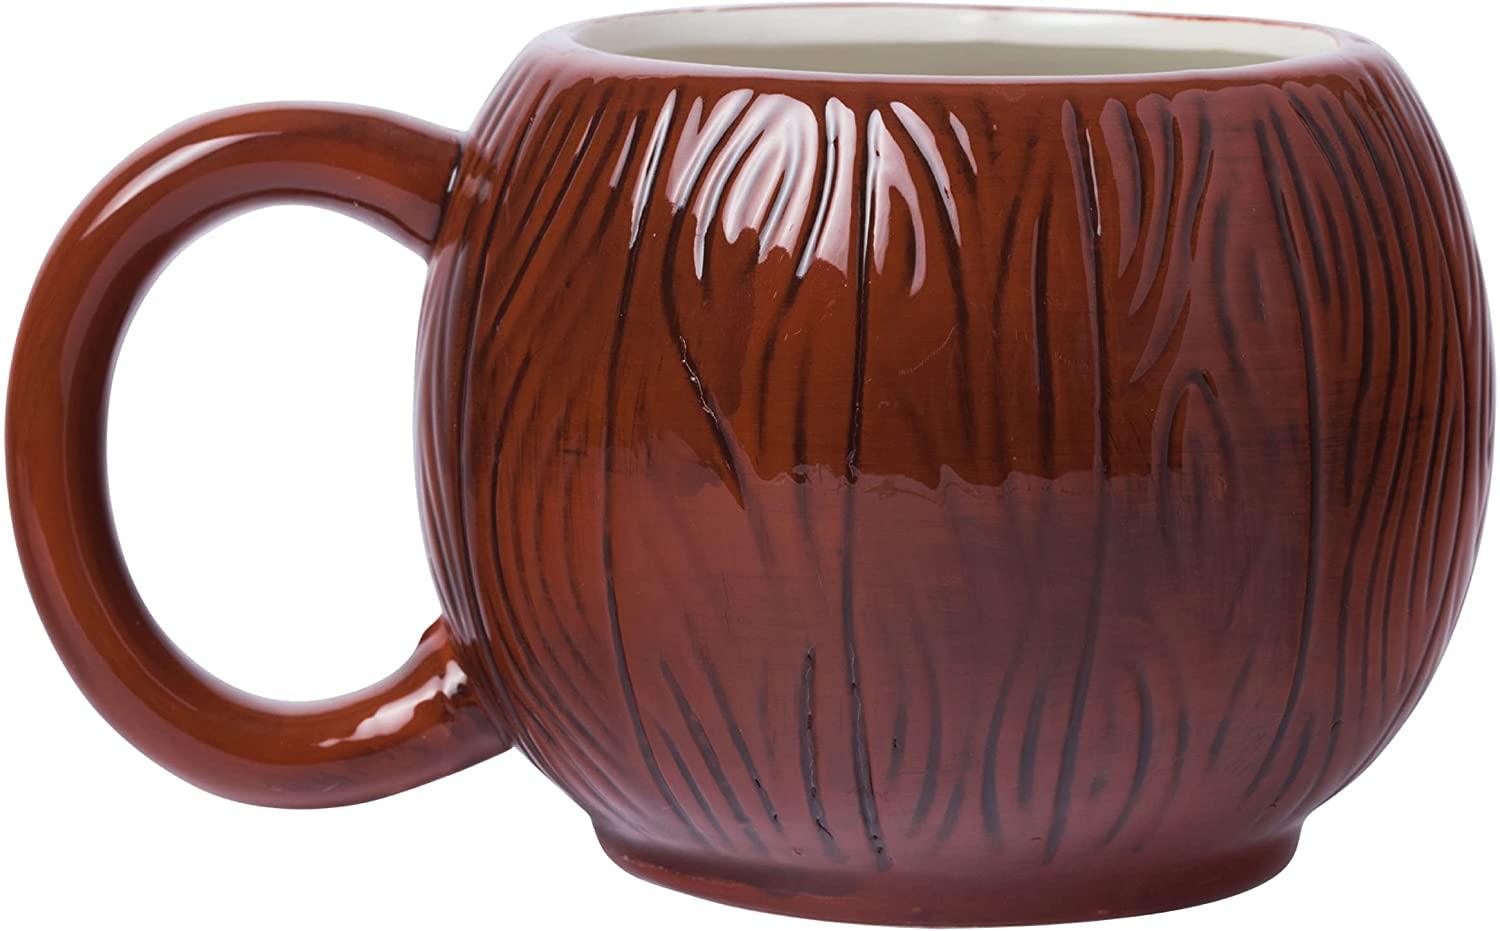 Disney's Lilo and Stitch Aloha Coconut Sculpted Ceramic Mug